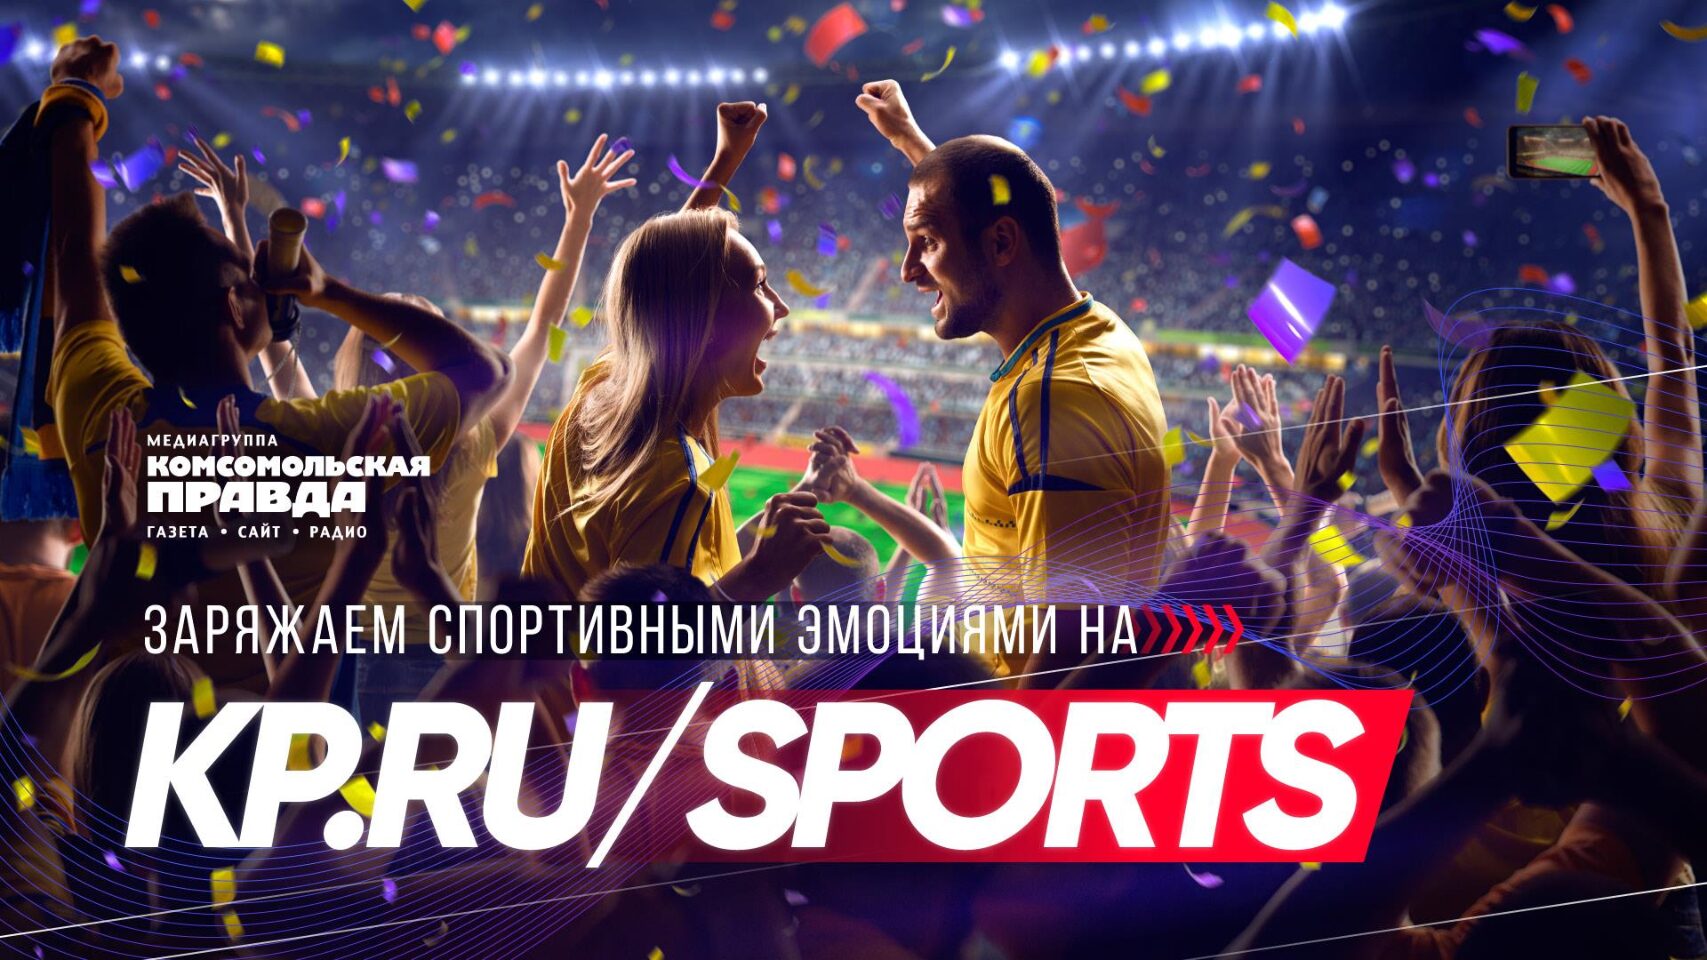 Раздел Sports на сайте kp.ru